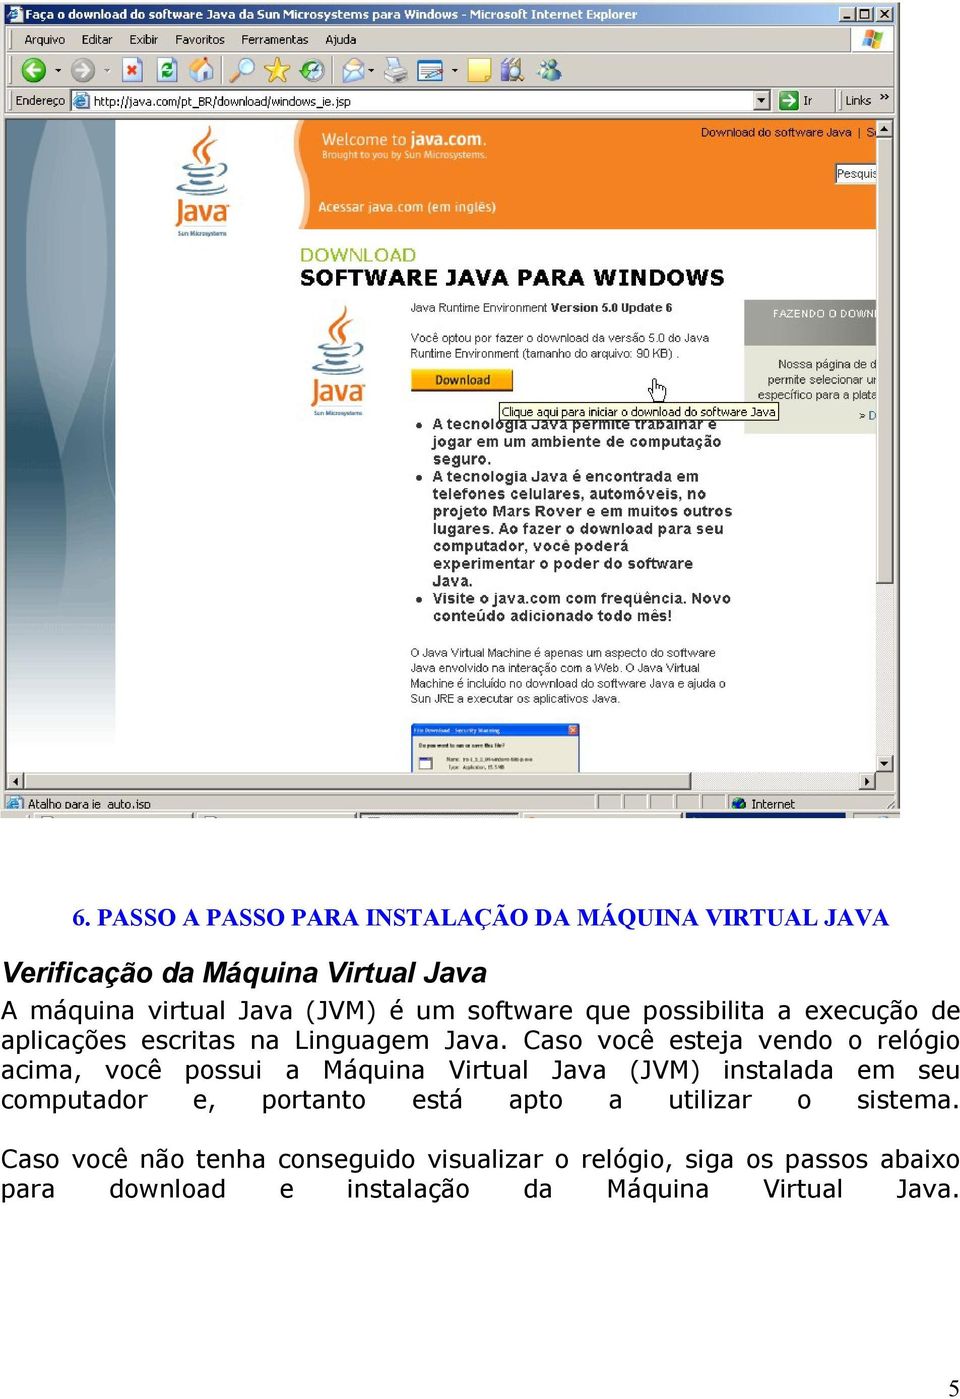 Caso você esteja vendo o relógio acima, você possui a Máquina Virtual Java (JVM) instalada em seu computador e, portanto